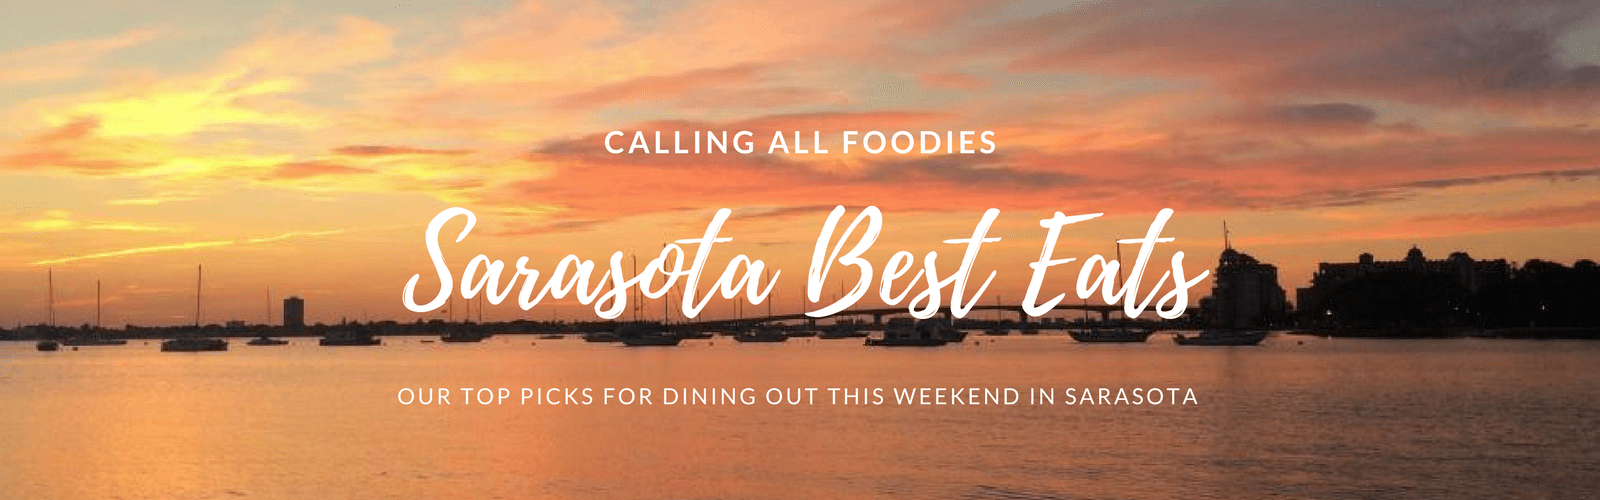 Sarasota Best Eats, foodies, Sarasota lifestyle